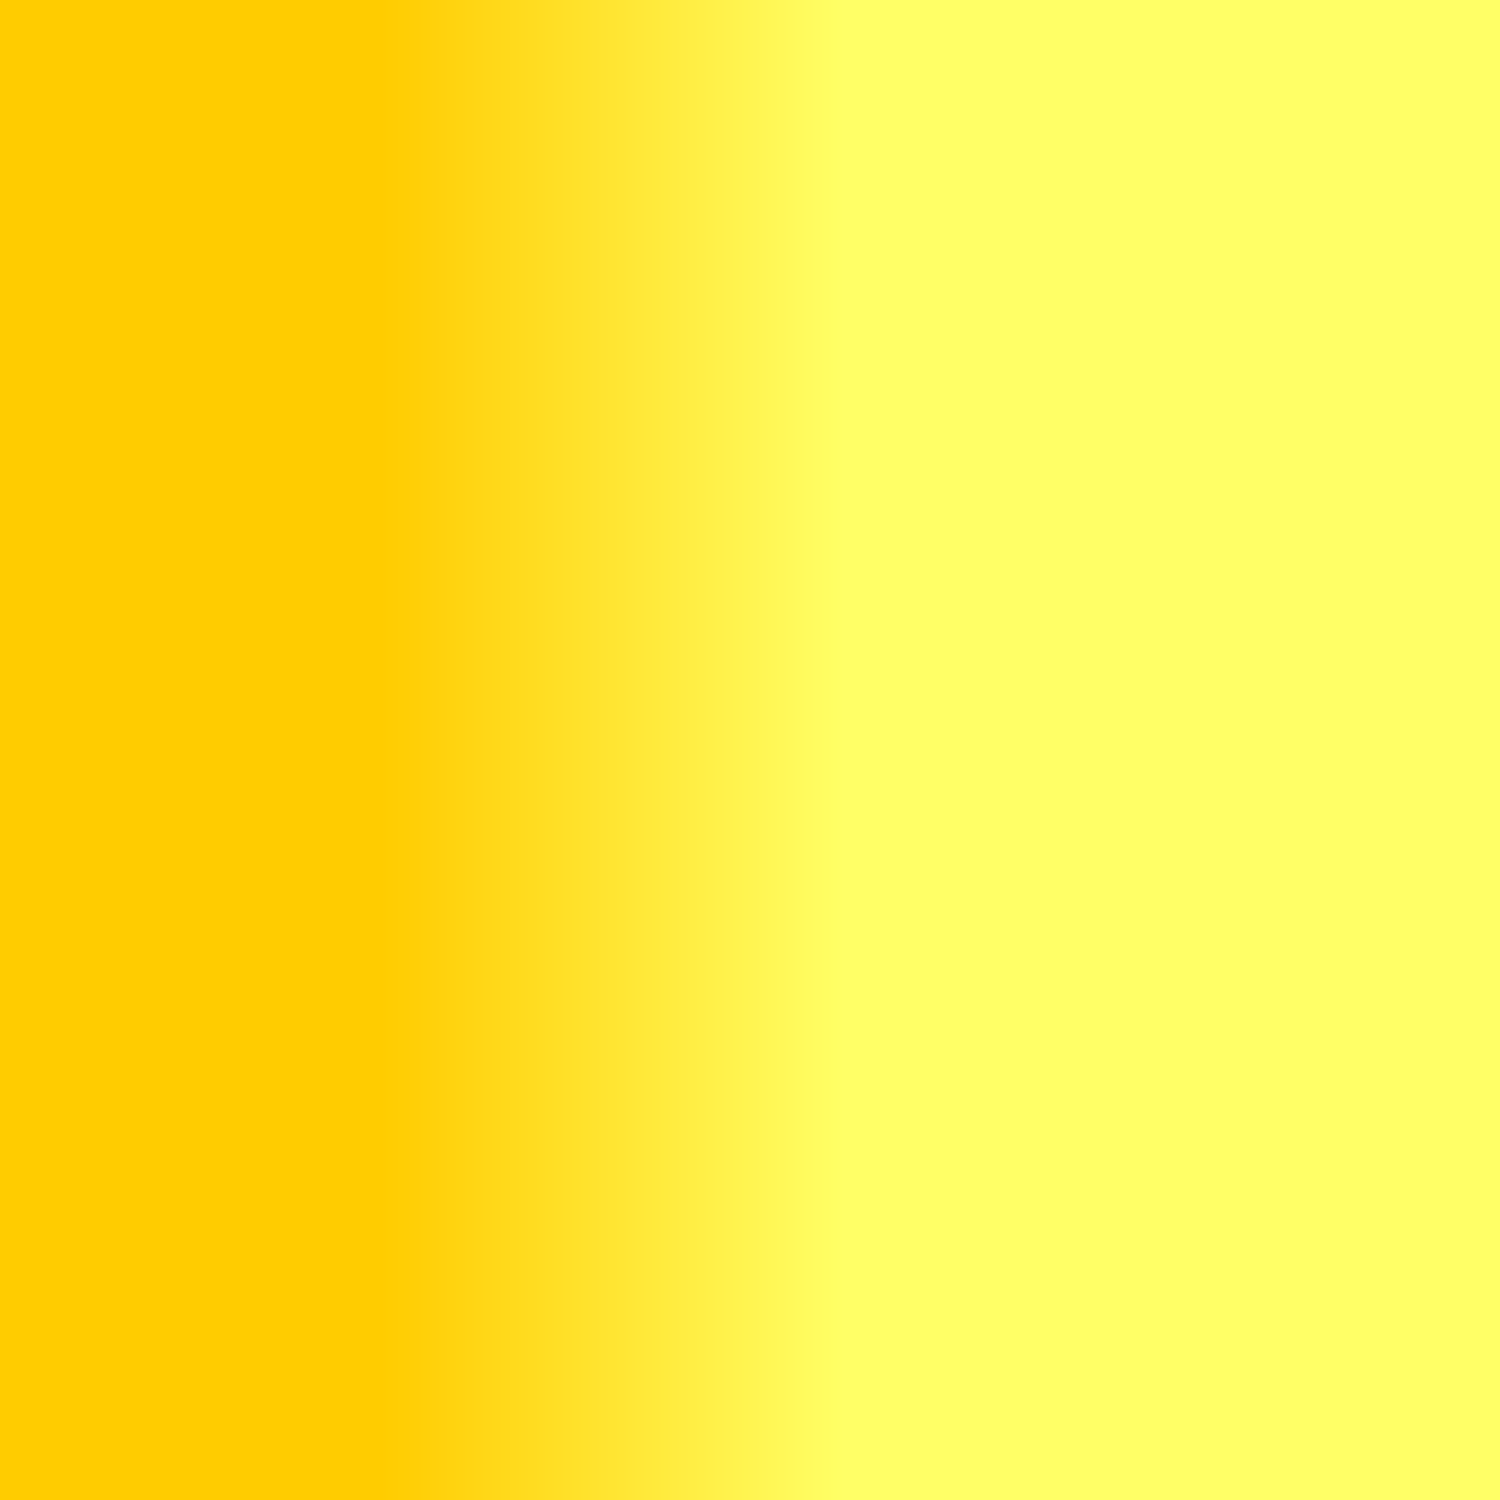 [76+] Yellow Colour Wallpaper | WallpaperSafari.com